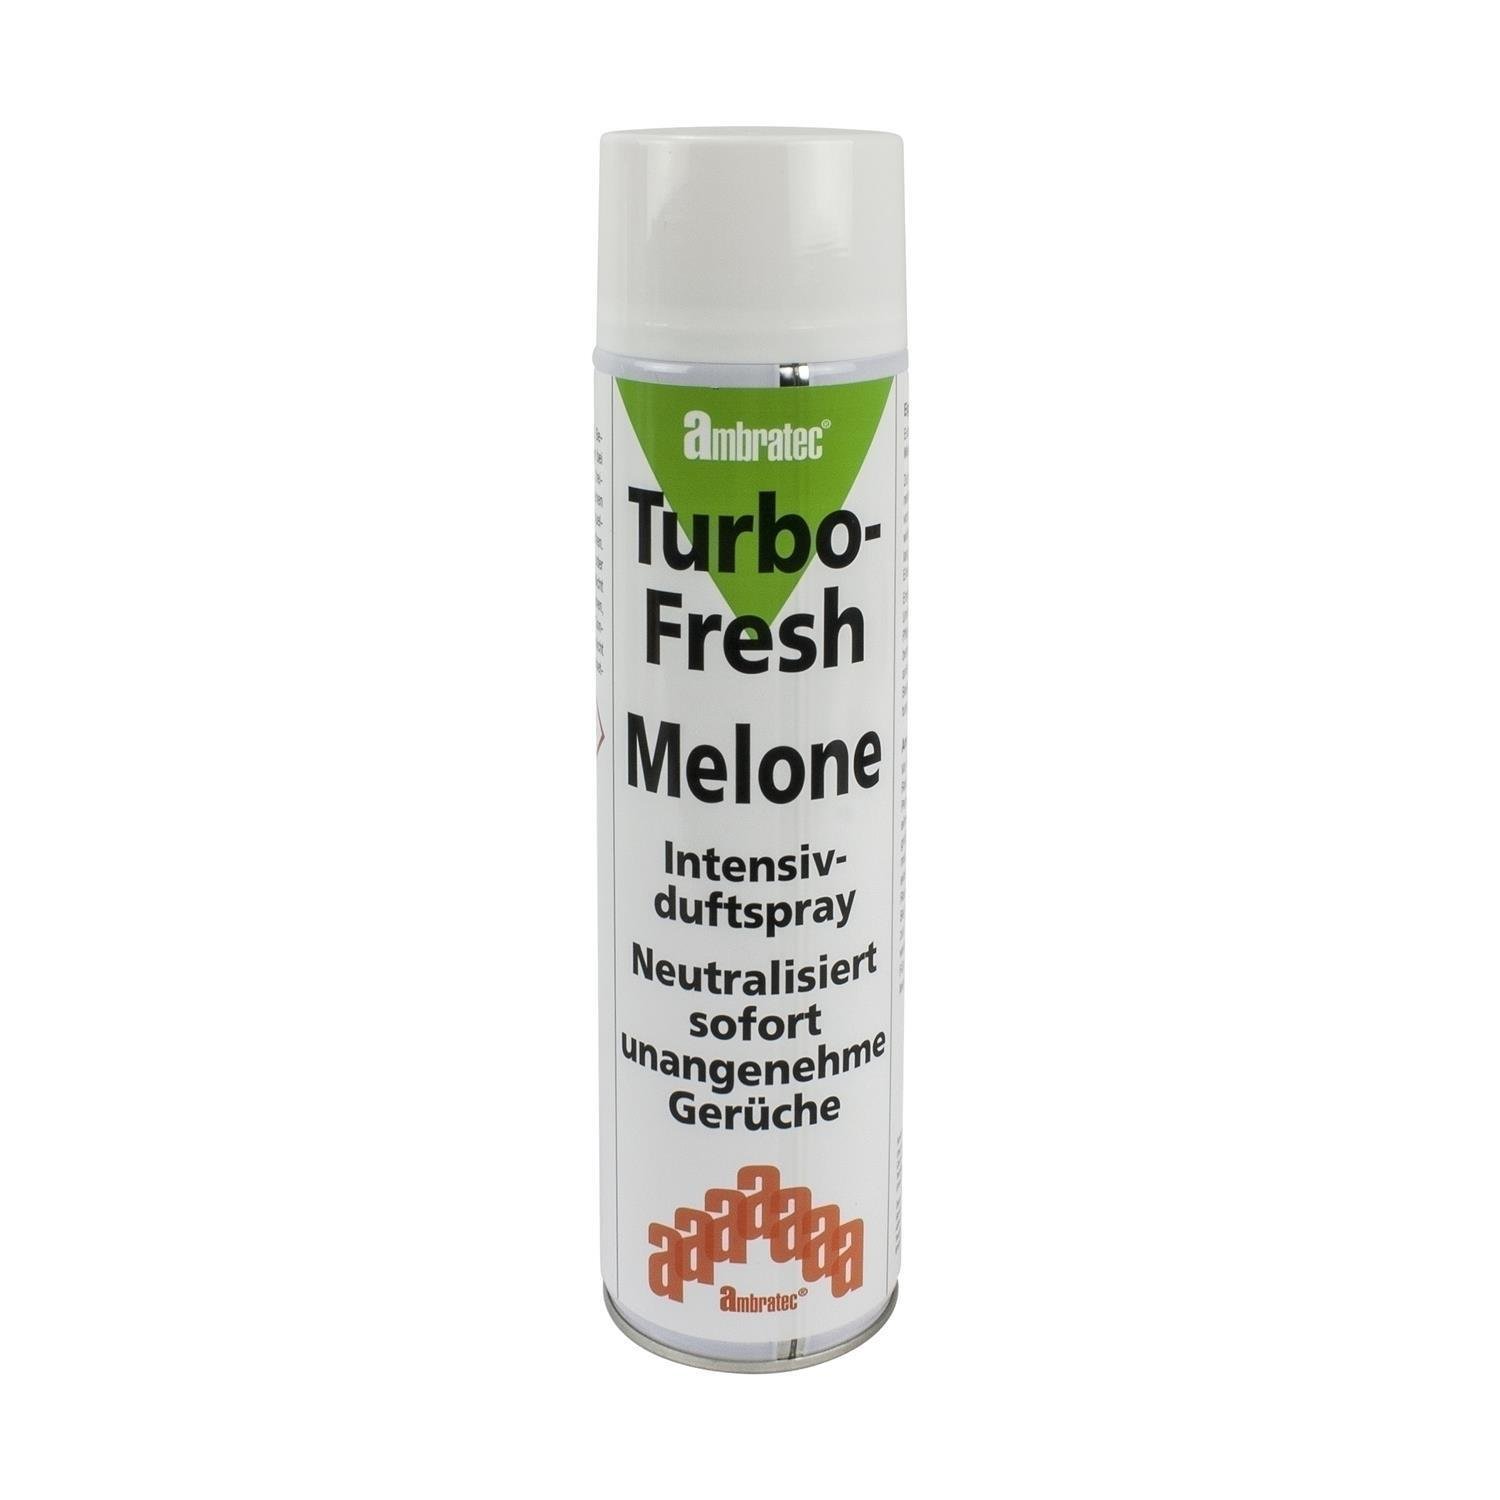 Ambratec Turbo-Fresh Melone unter Luft & Wasser > Geruchsneutralisierung